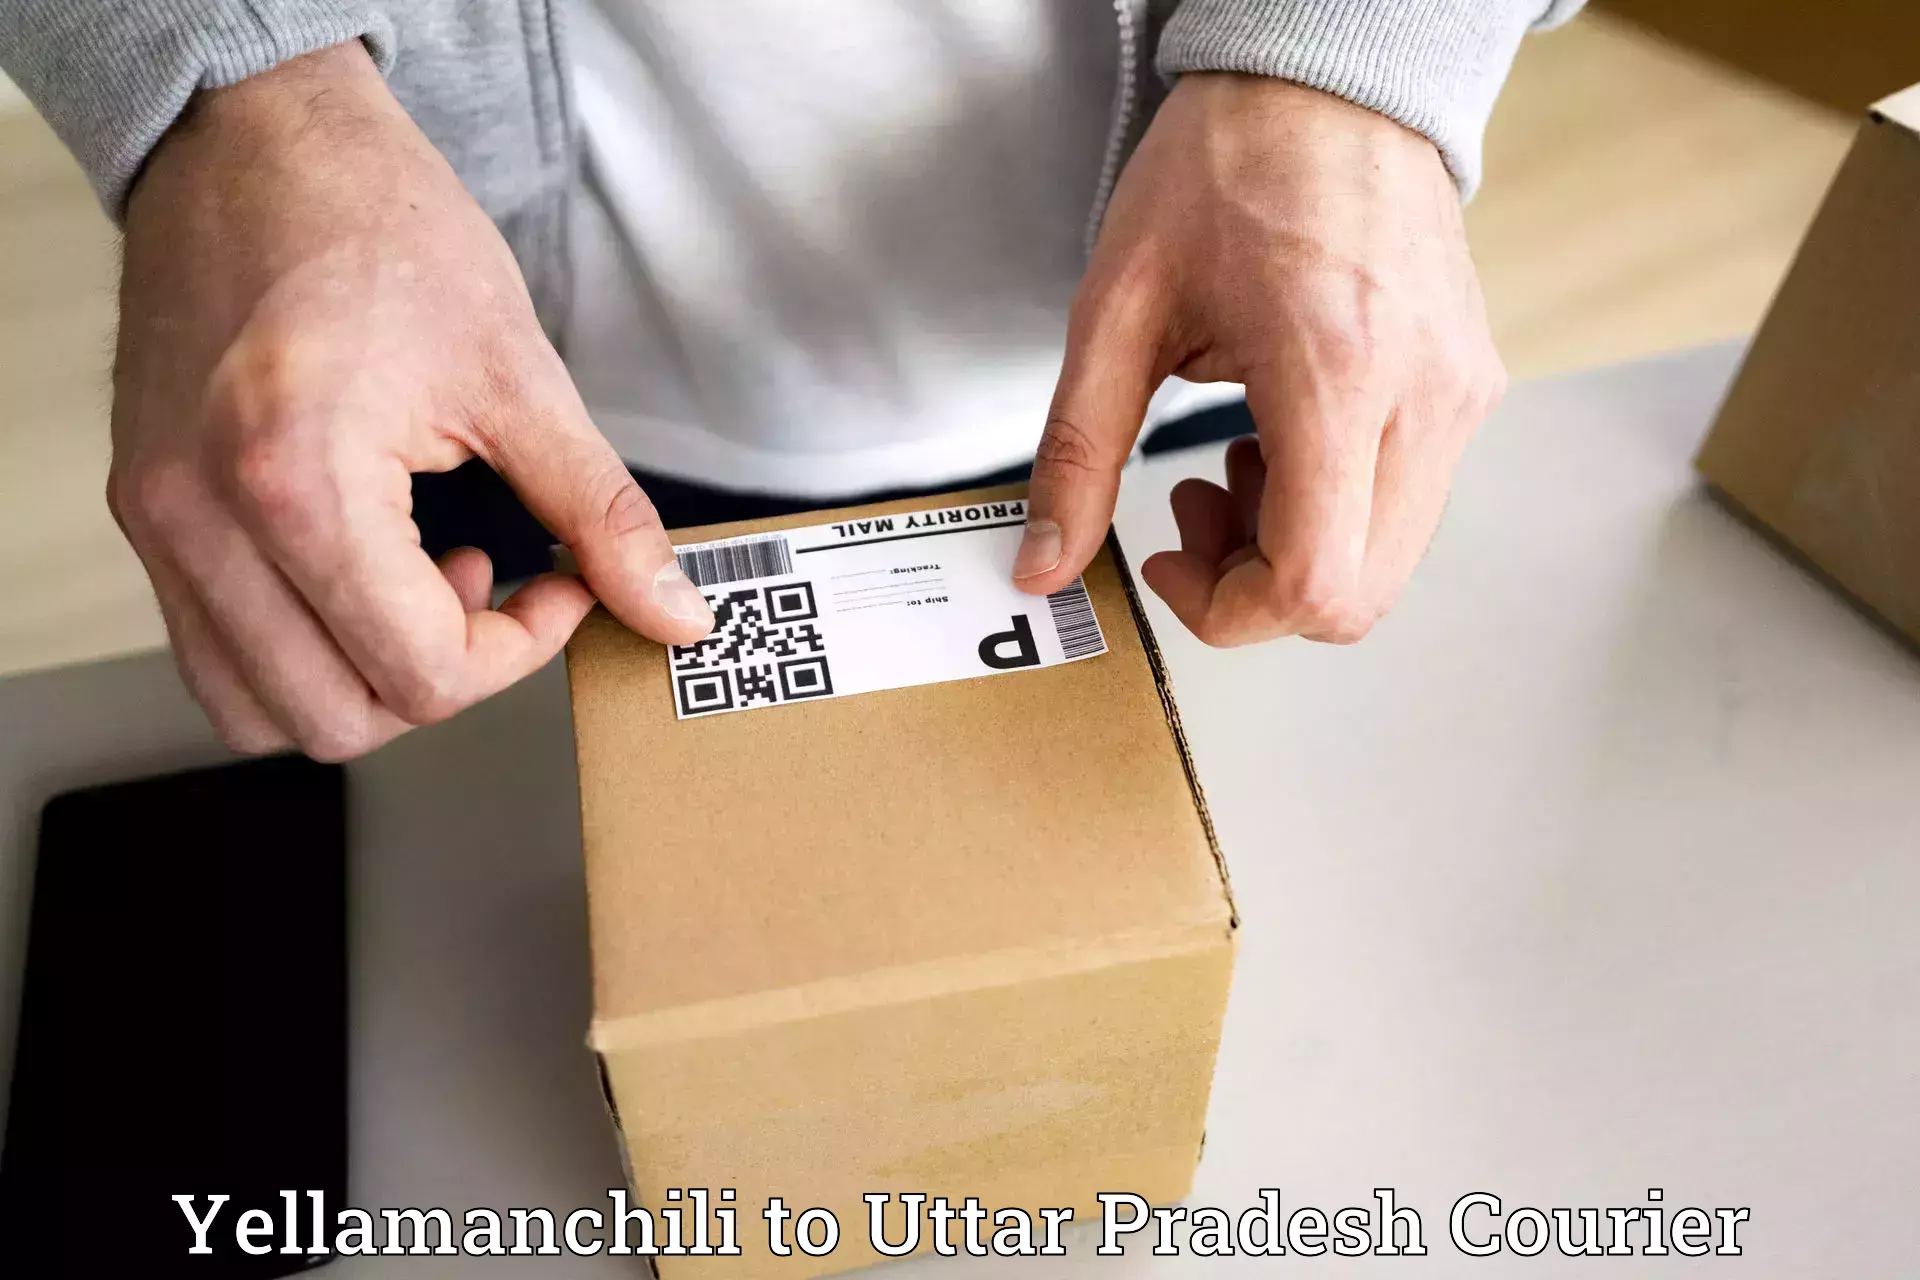 Customer-focused courier Yellamanchili to Uttar Pradesh